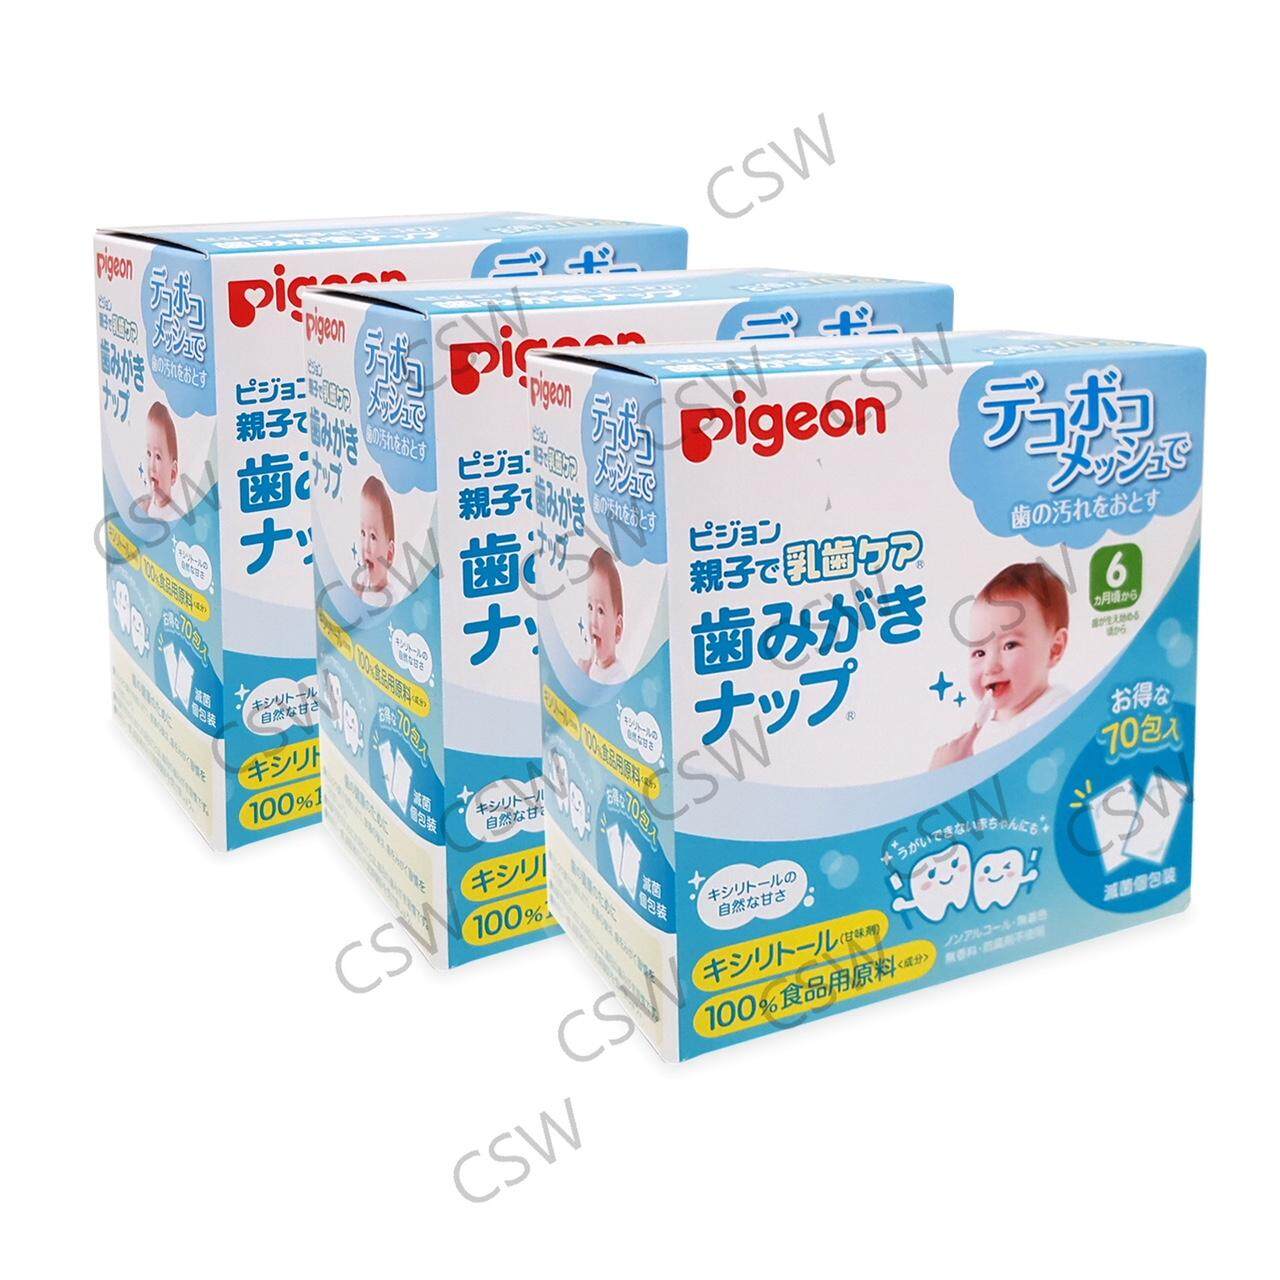 รีวิว กล่องโฉมใหม่ PIGEON Infant Teeth Cleaning Wipes พีเจ้นผ้าเช็ดฟันเด็กทารก จำนวน 70 ชิ้น 3 กล่อง (รวม 210 ชิ้น)